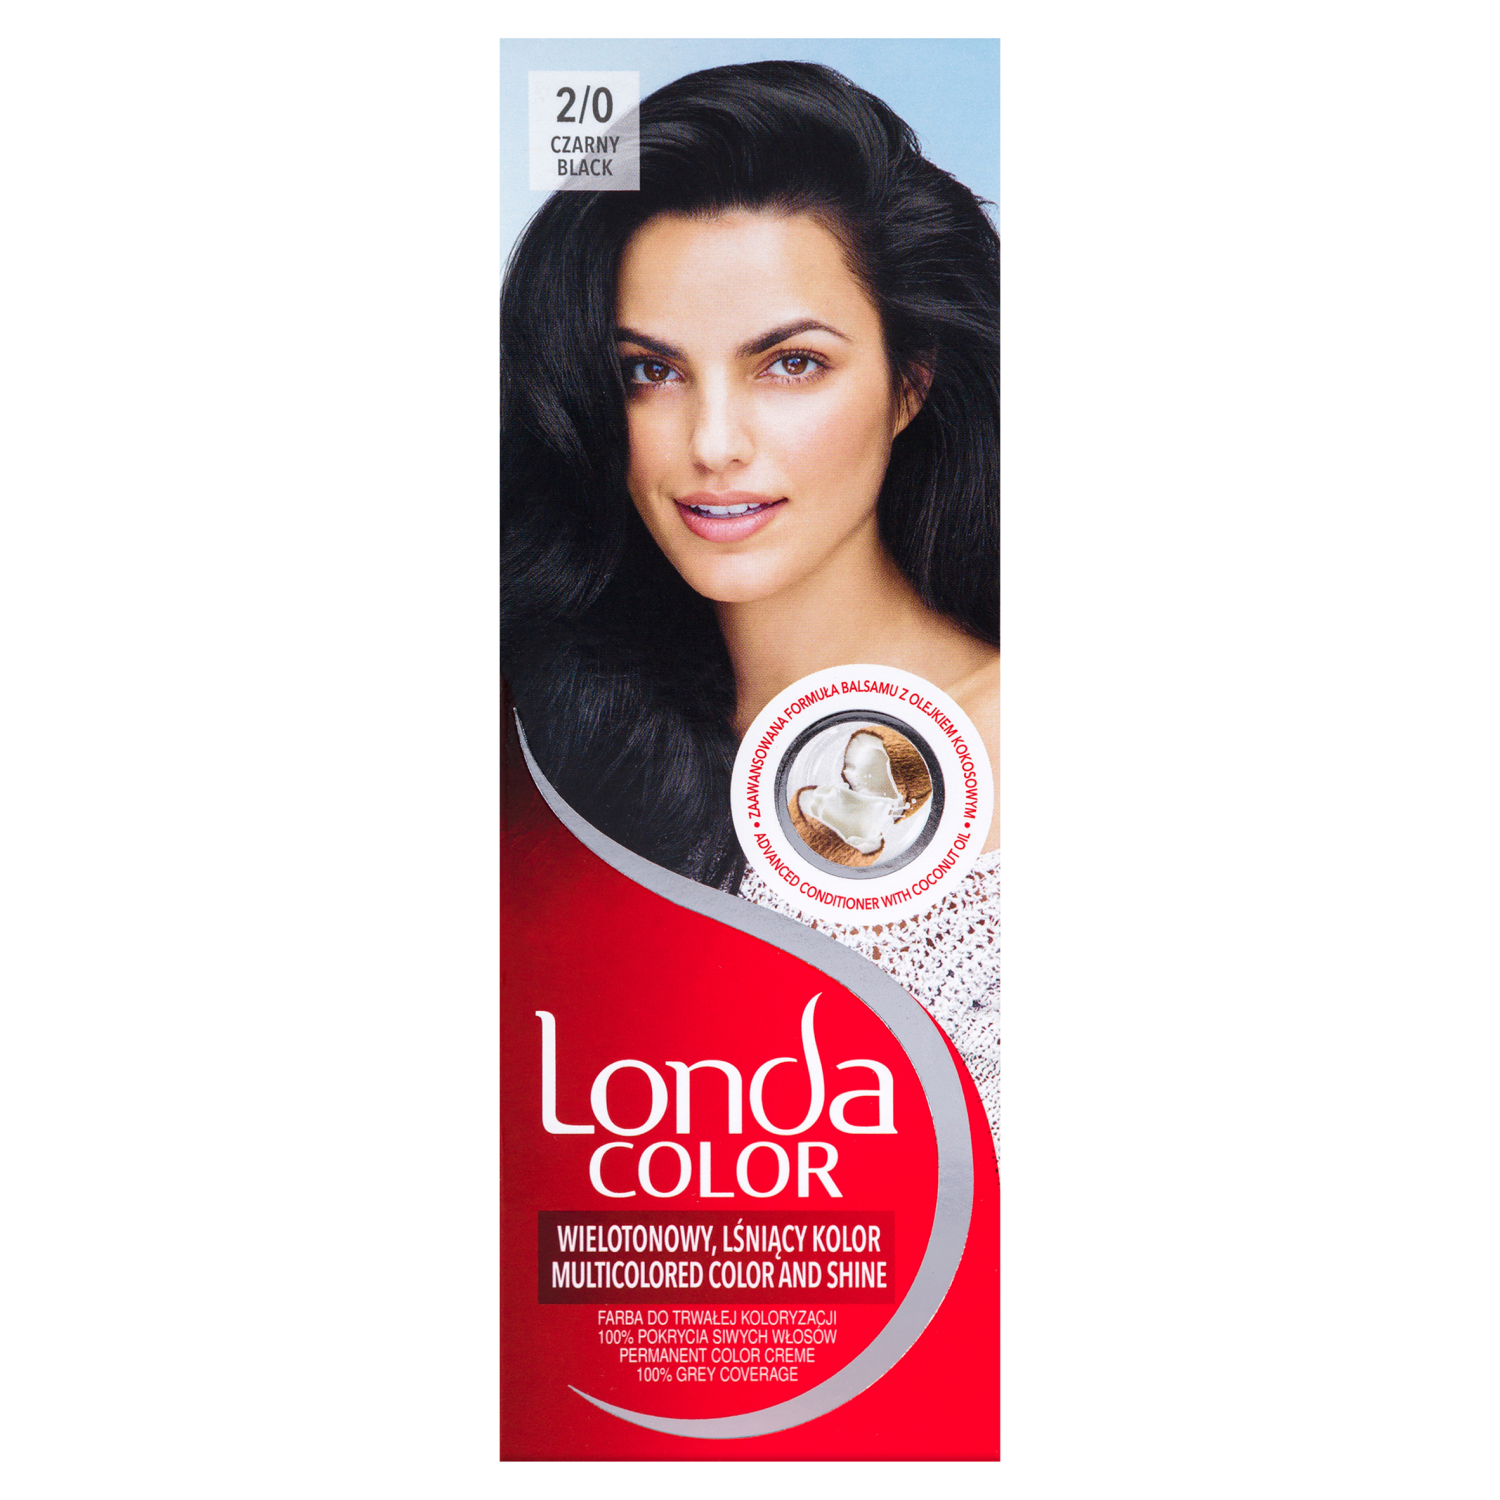 Крем-краска для волос 2/0 черный Londa Color, 1 упаковка